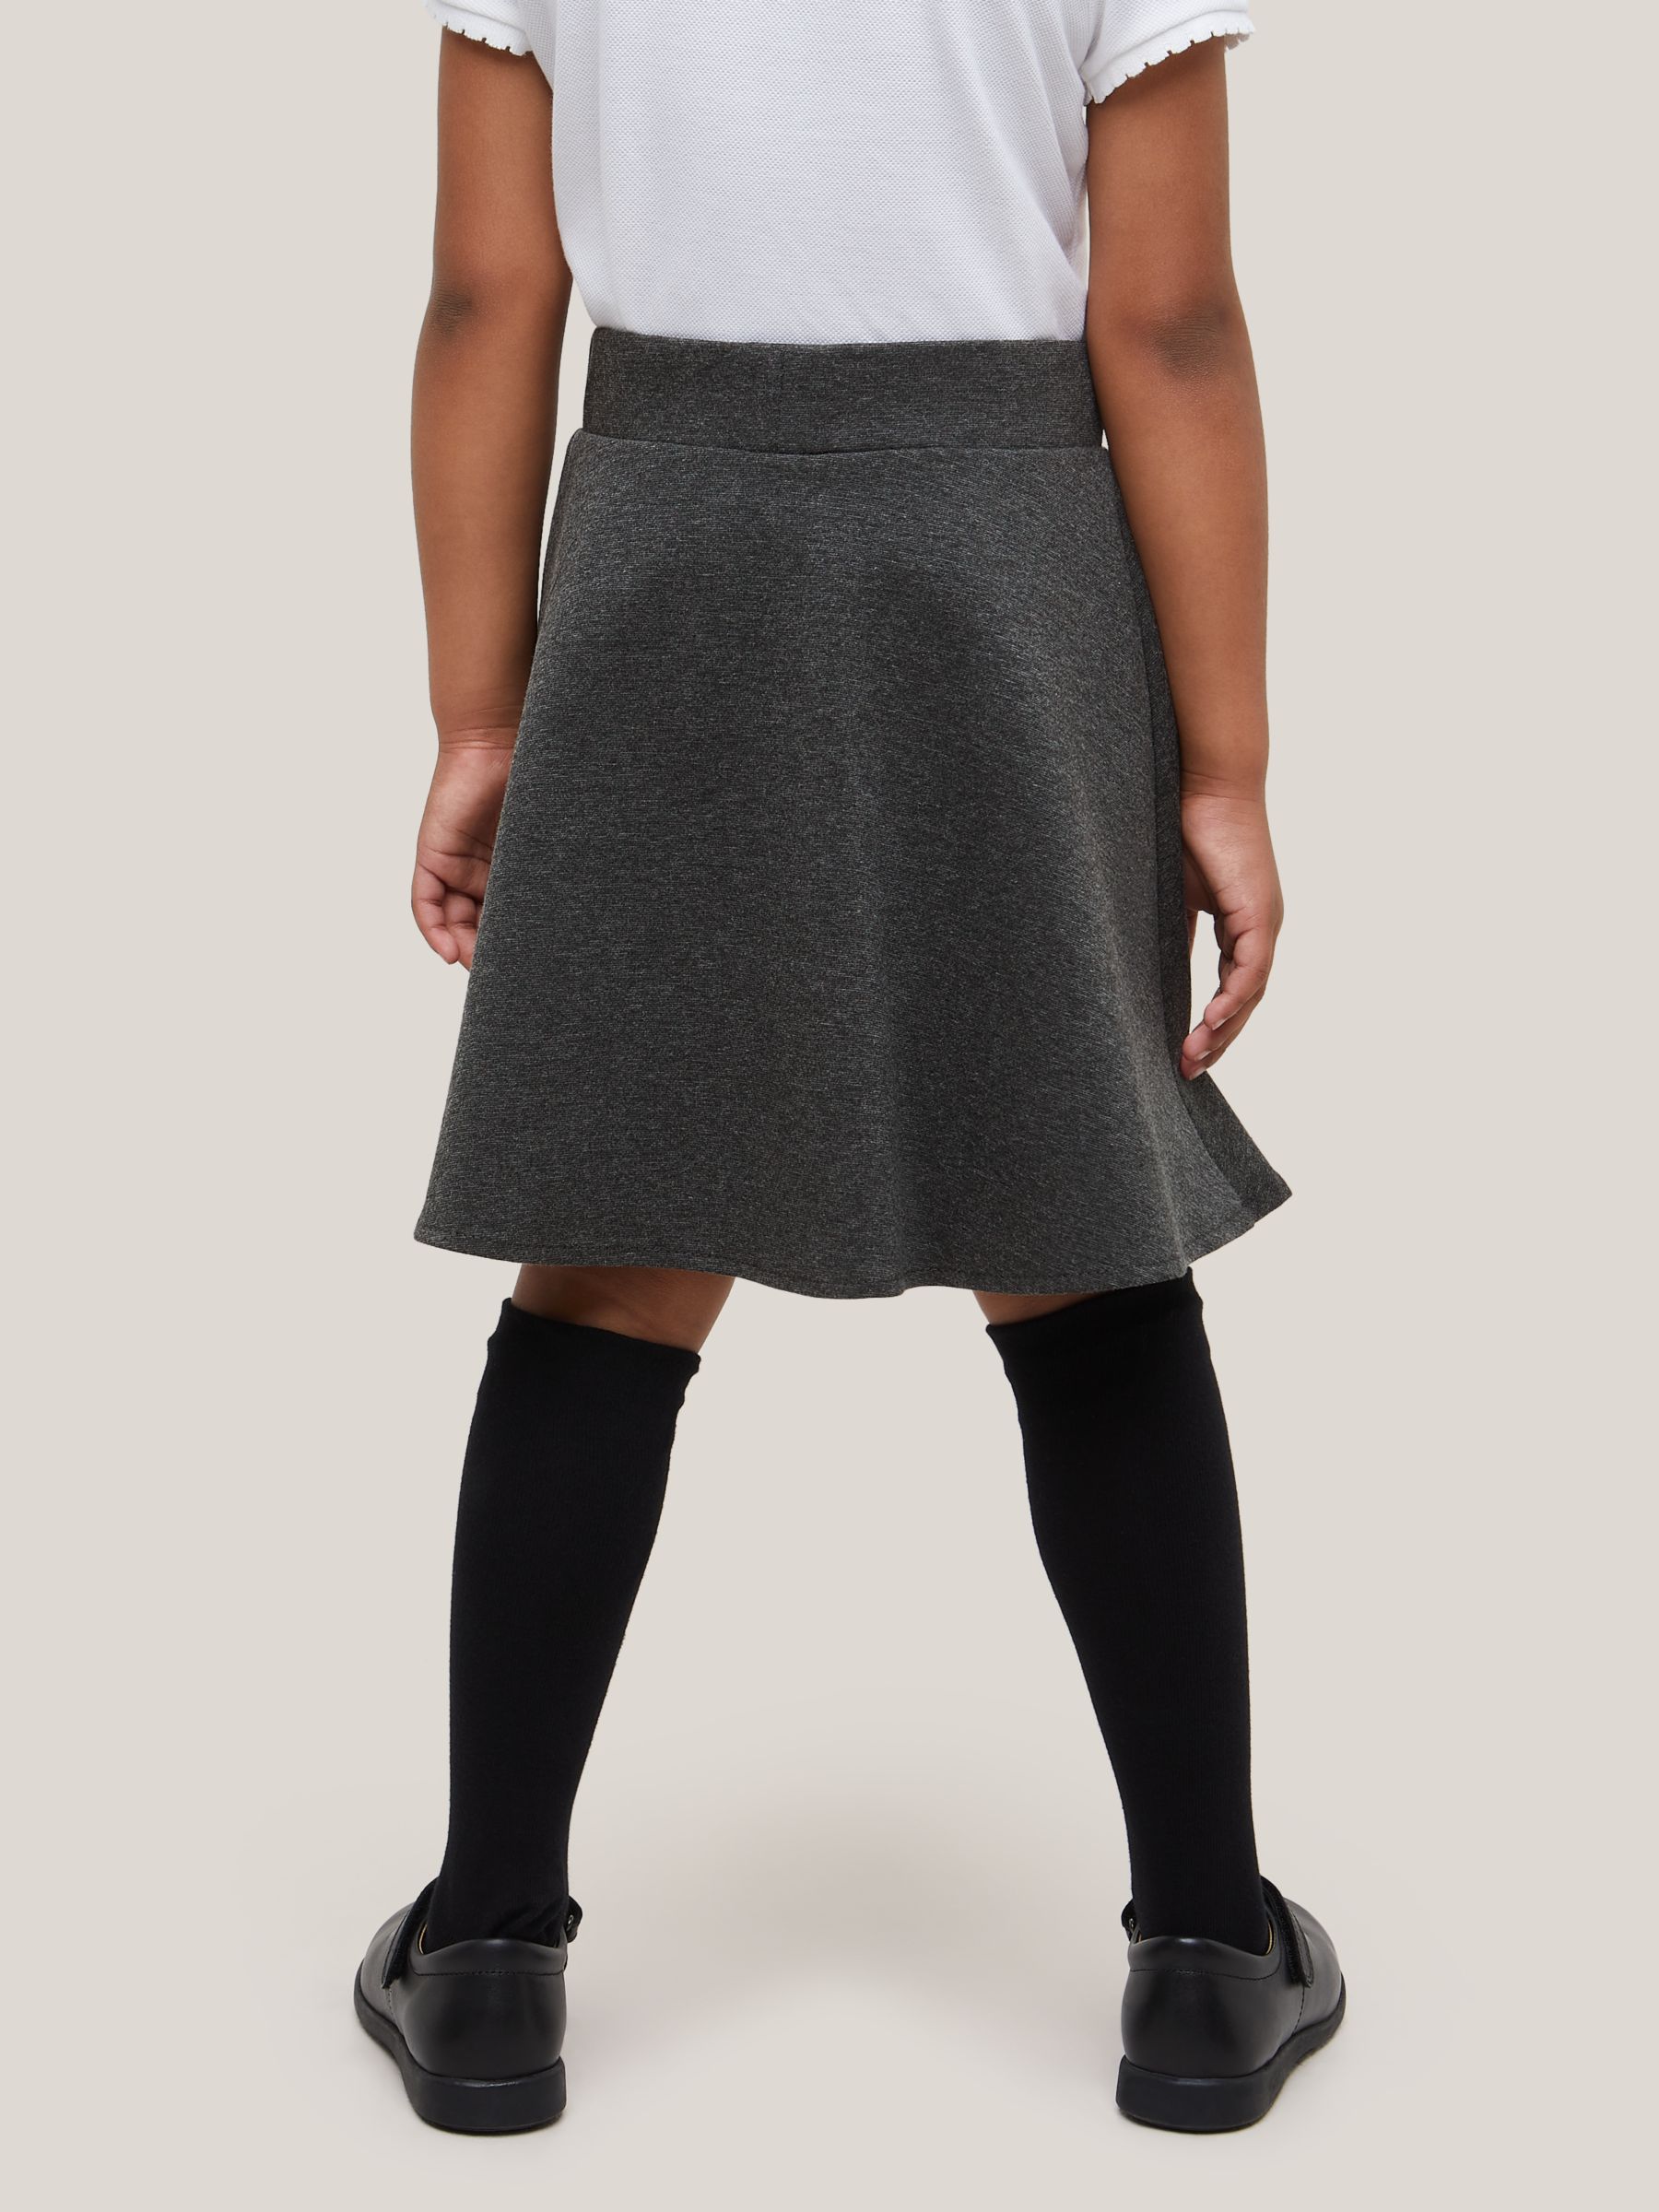 Buy John Lewis Girls' Skater School Skirt, Grey Online at johnlewis.com